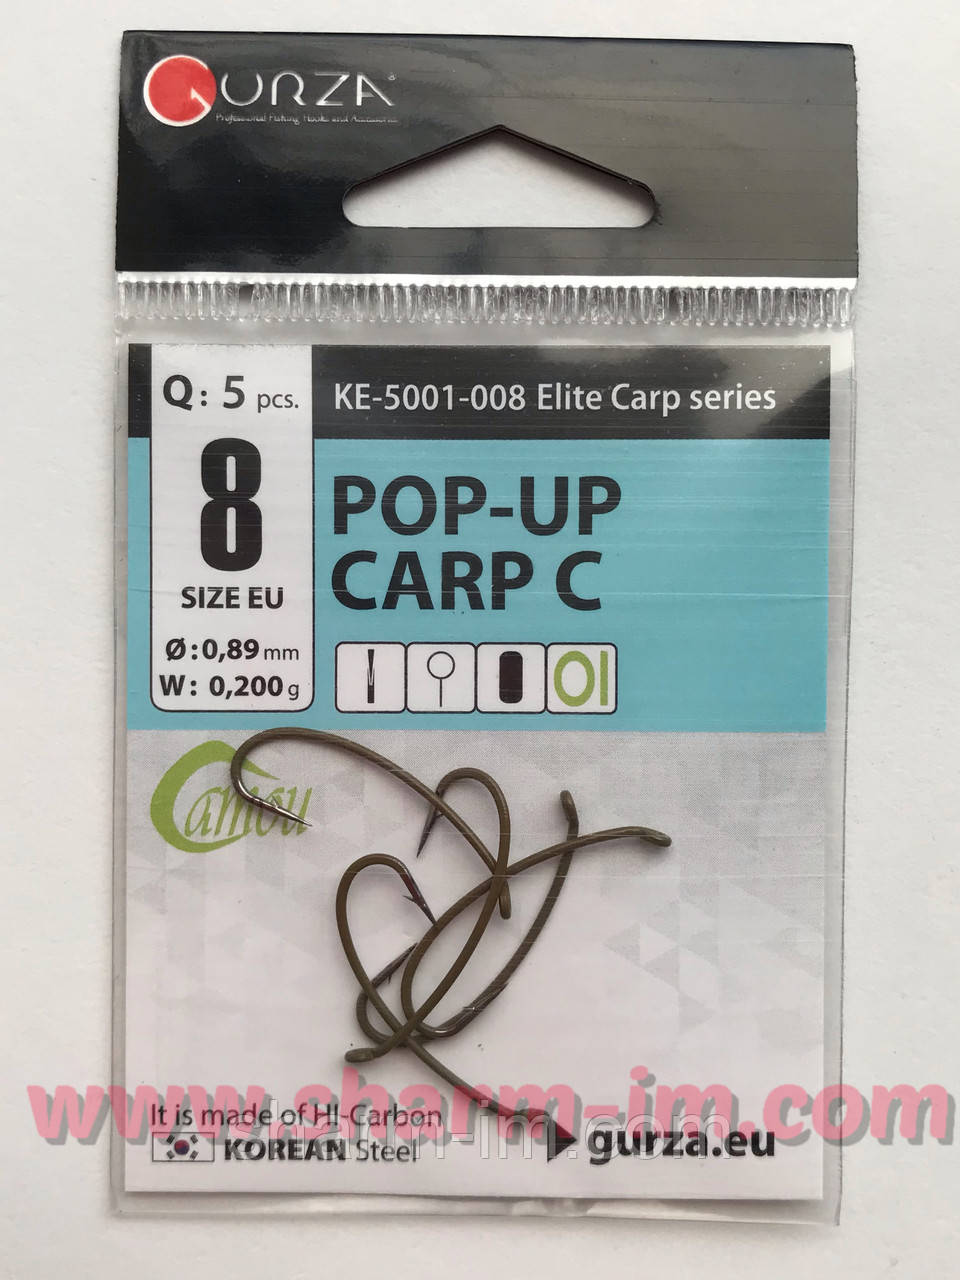 Гачки Gurza Pop-Up Carp C Ring (Camou) No8 Ке-5001-008